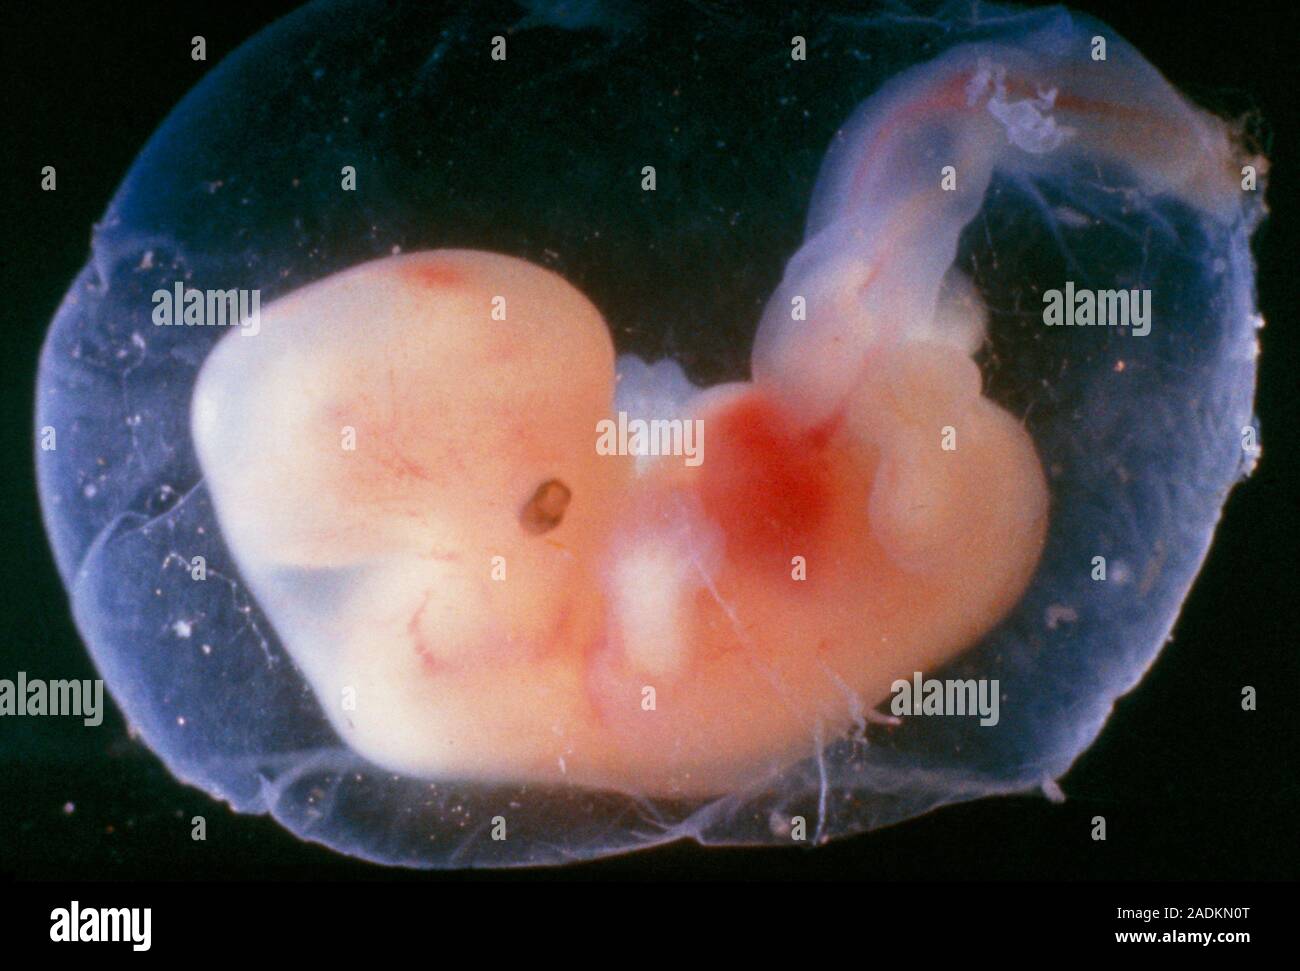 Срок плода 6 недель. Зародыг человека на 5 недели беременности. Эмбрион человека 5 недель.